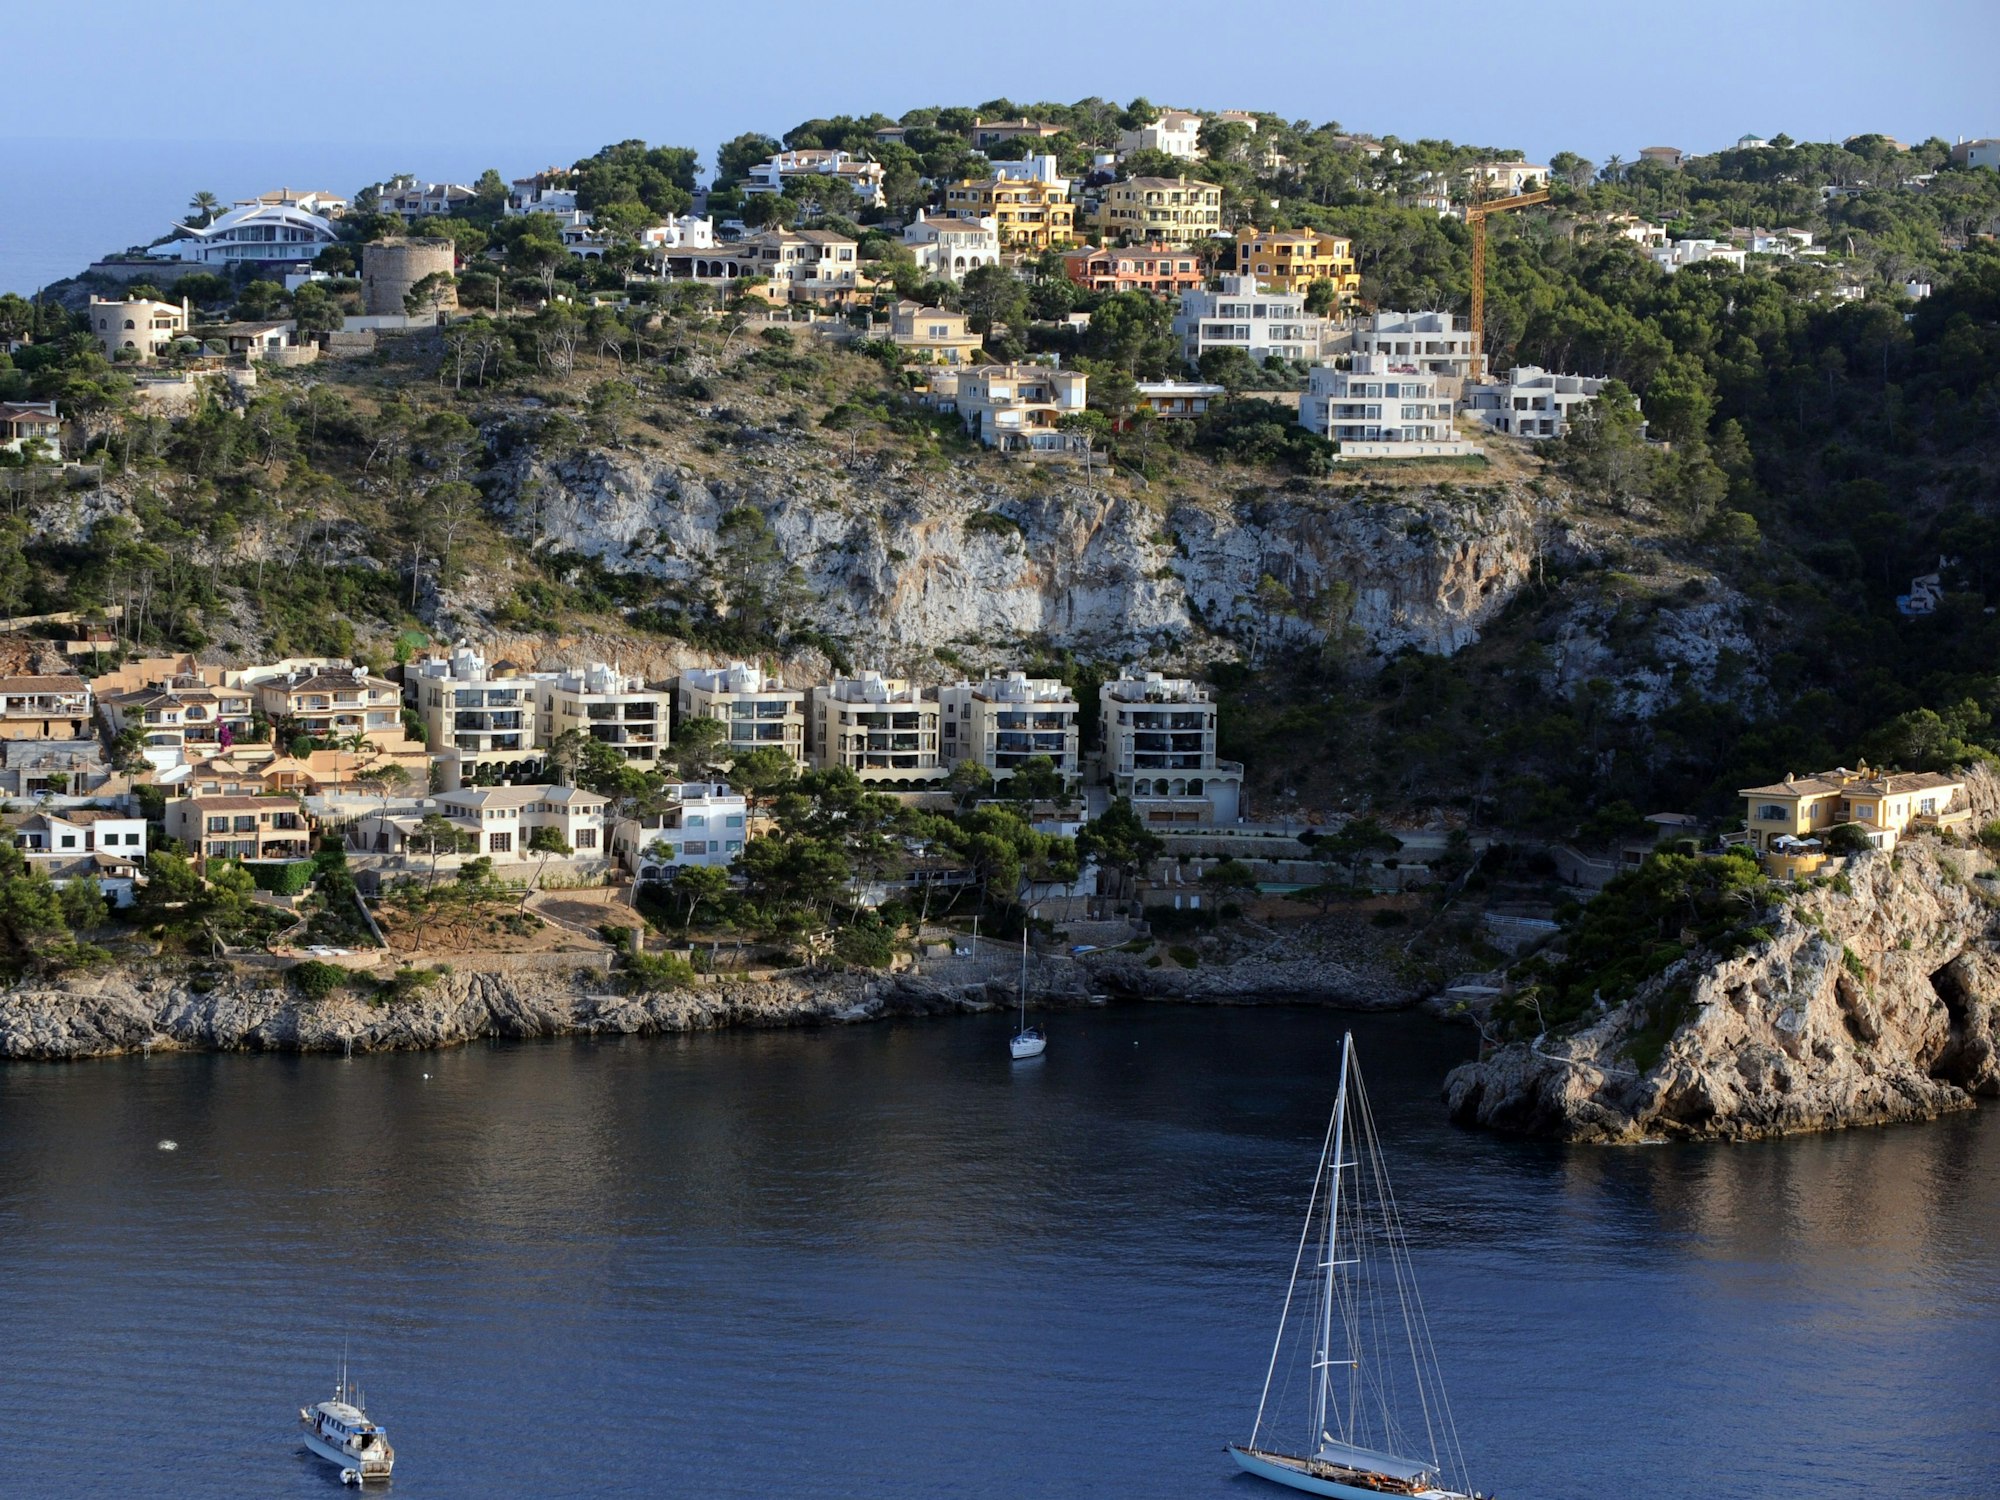 Häuser und Appartements auf denFelsen und Hügeln beiPort d'Andratx auf Mallorca.